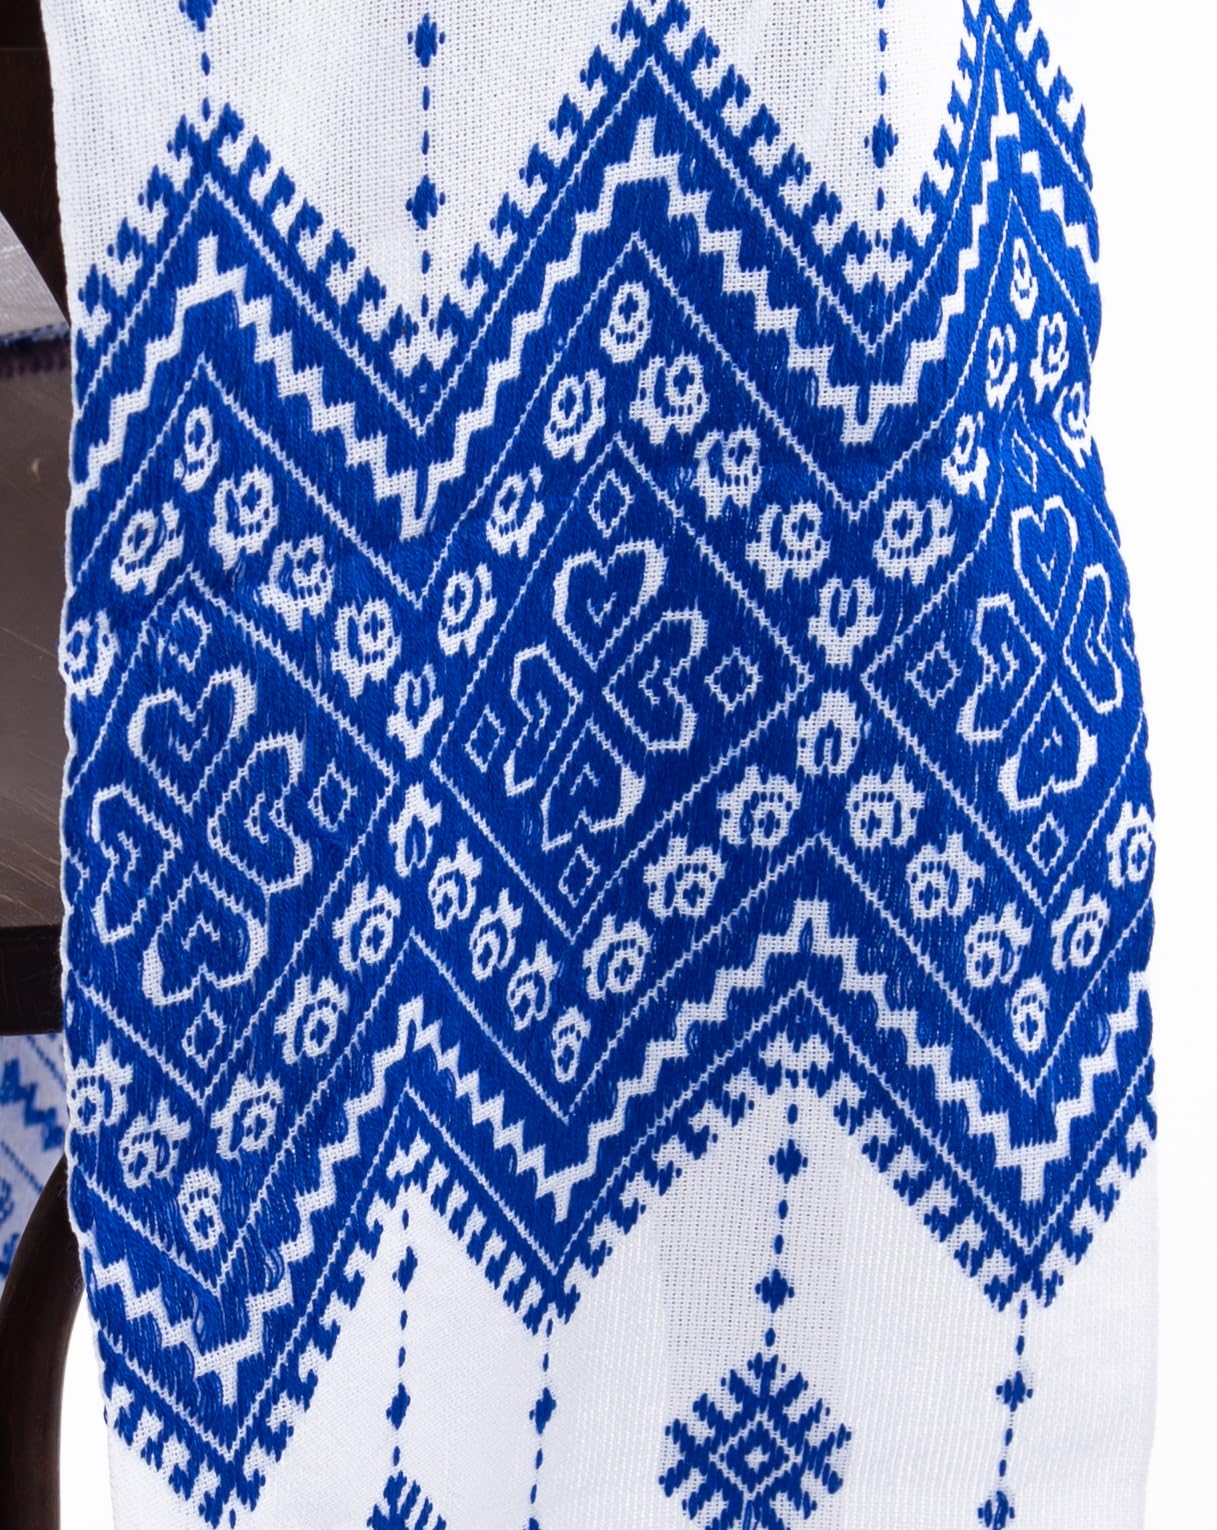 Rushnichok Ukrainian RUSHNYK Hand Embroidered Towel White Blue Wedding Decor 190 x 33 cm